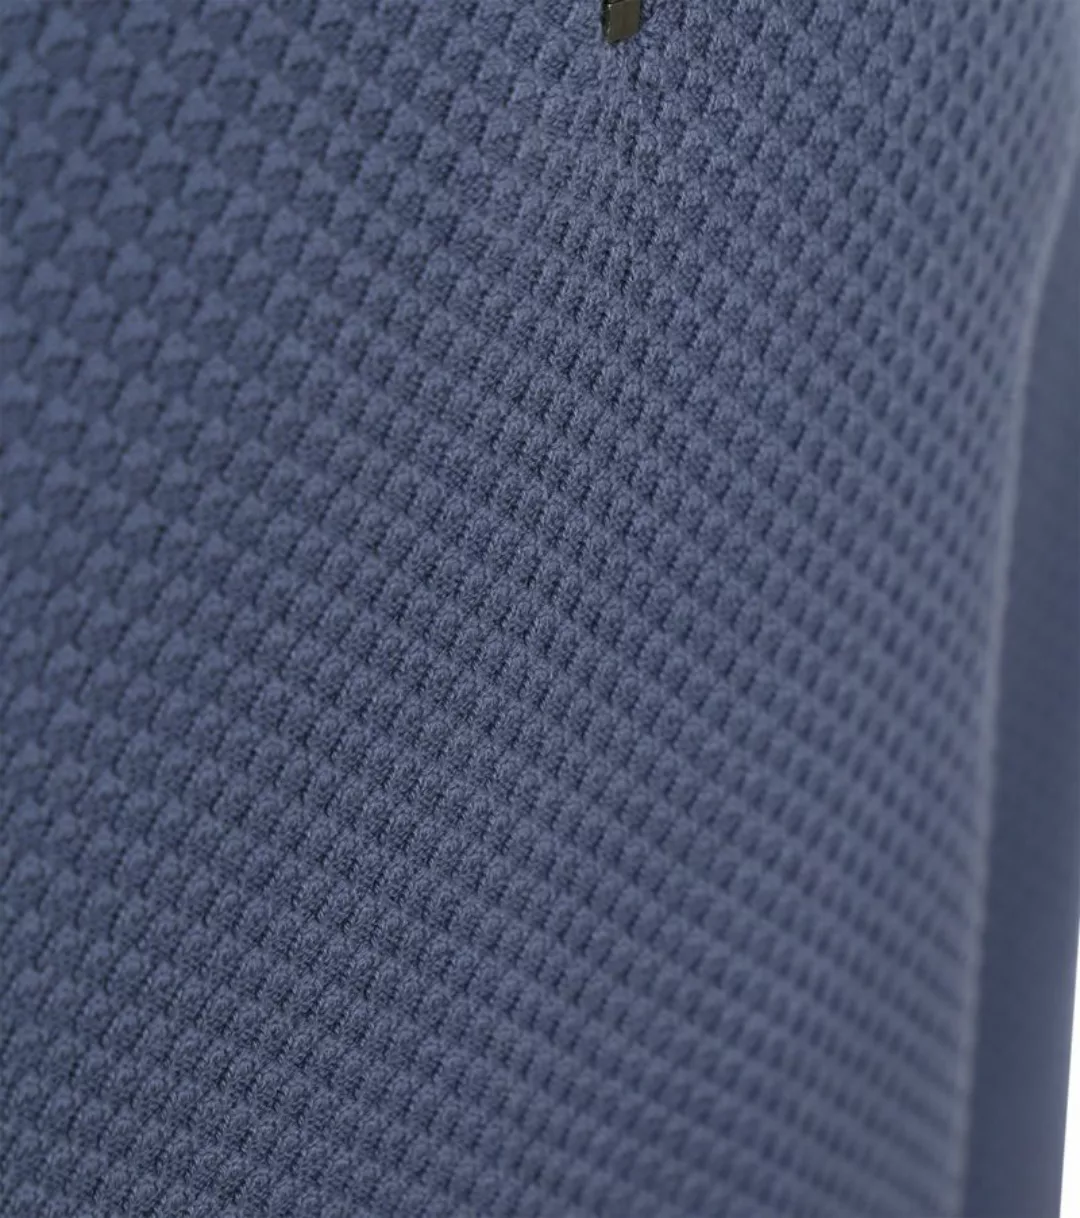 Tommy Hilfiger Half Zip Pullover Struktur Blau - Größe M günstig online kaufen